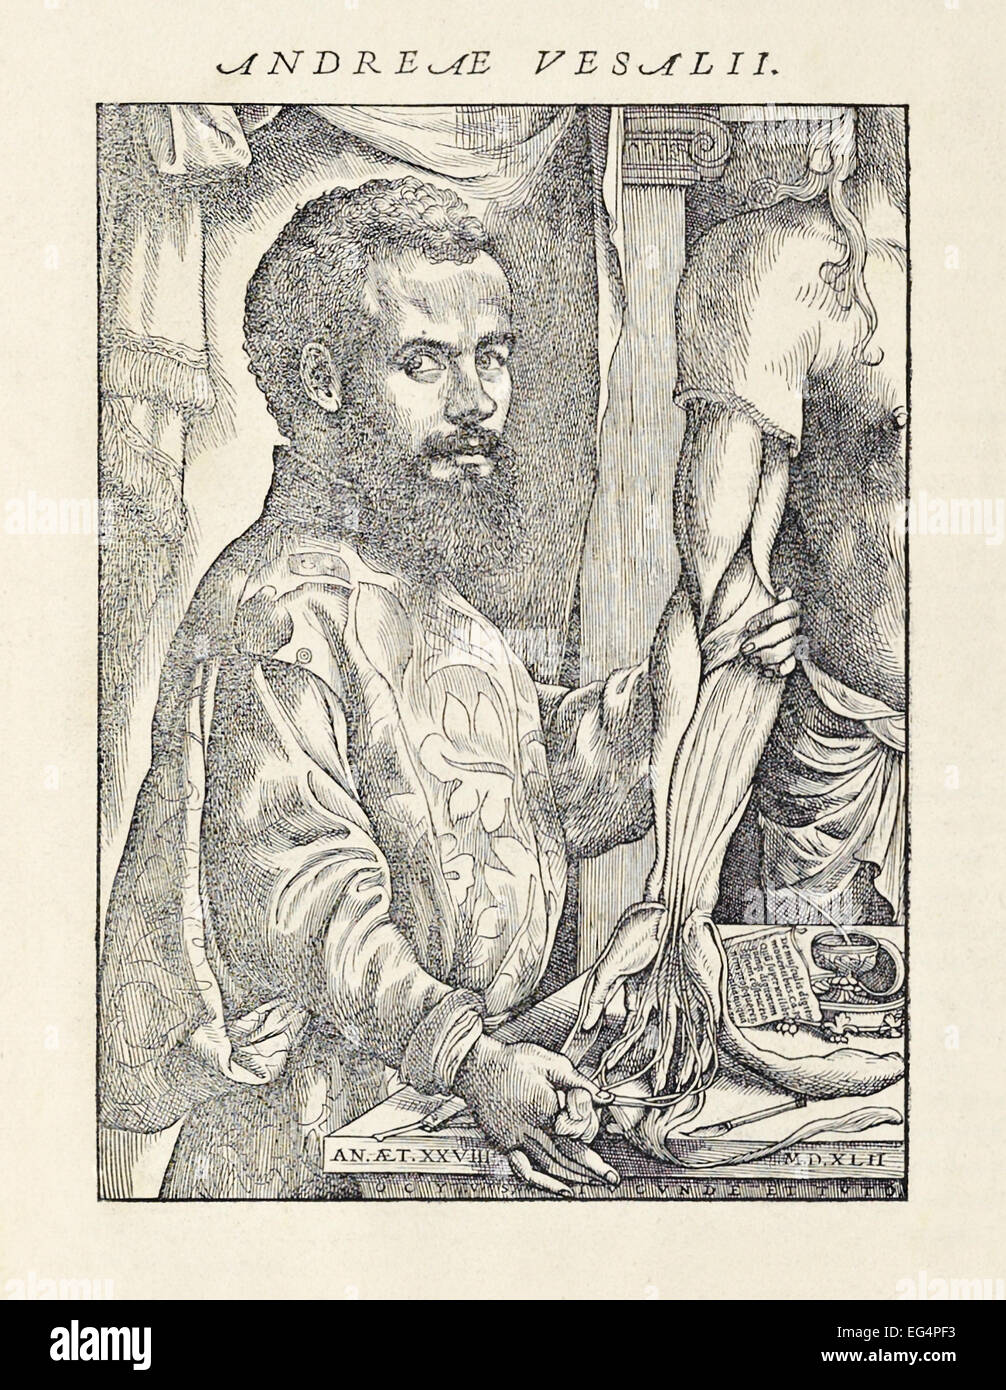 Xilografia ritratto di Andreas Vesalius (1514-1564) con dissezionati cadavere dal suo libro 'De humani corporis fabrica libri septem" pubblicato nel 1543. Vedere la descrizione per maggiori informazioni. Foto Stock